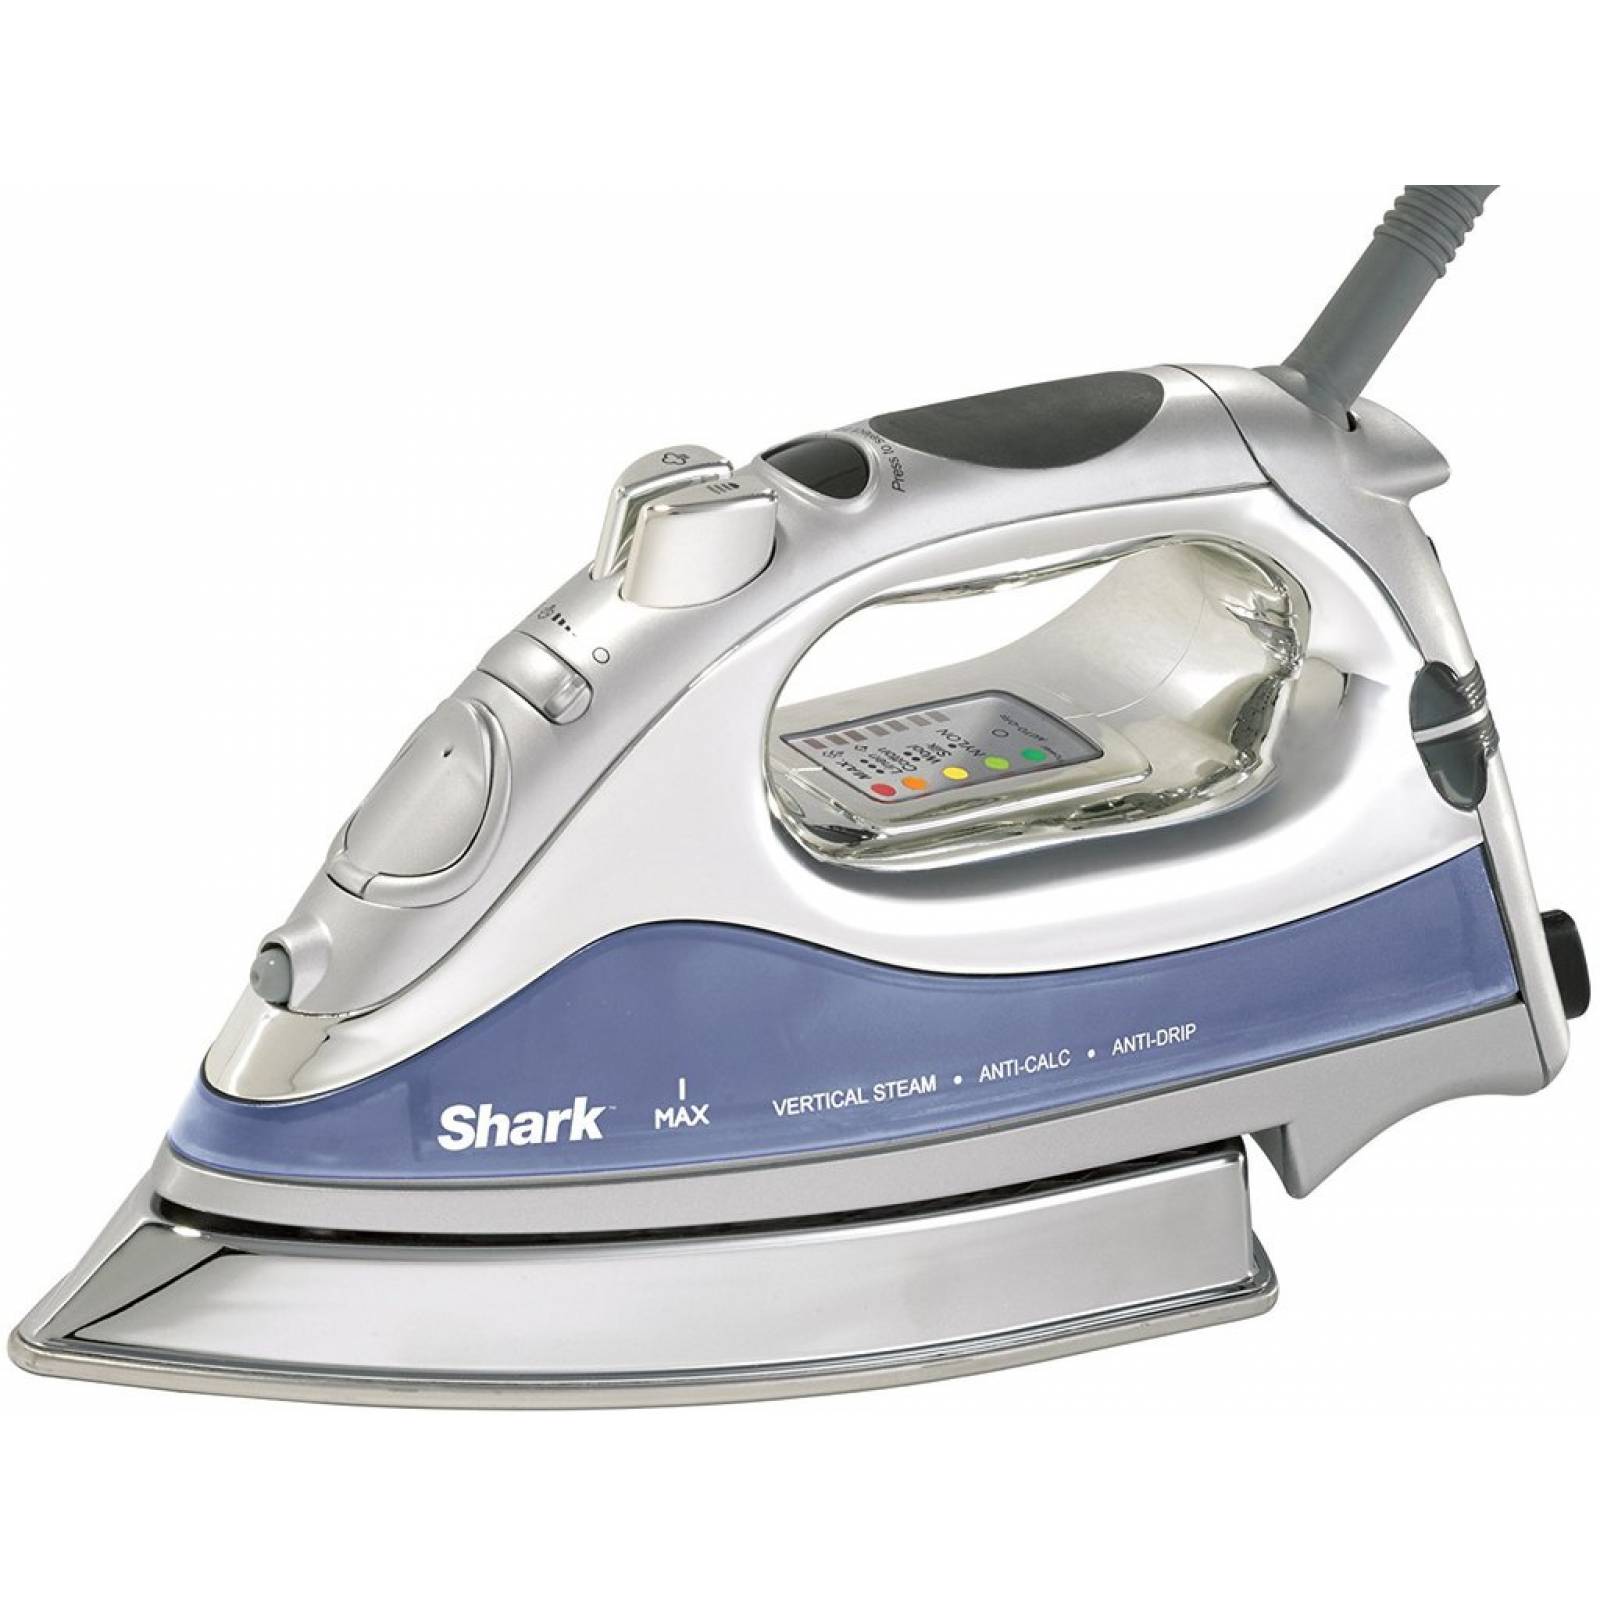 Plancha de Vapor Shark Acero inoxidable 1500VA GI468 - Reacondicionado